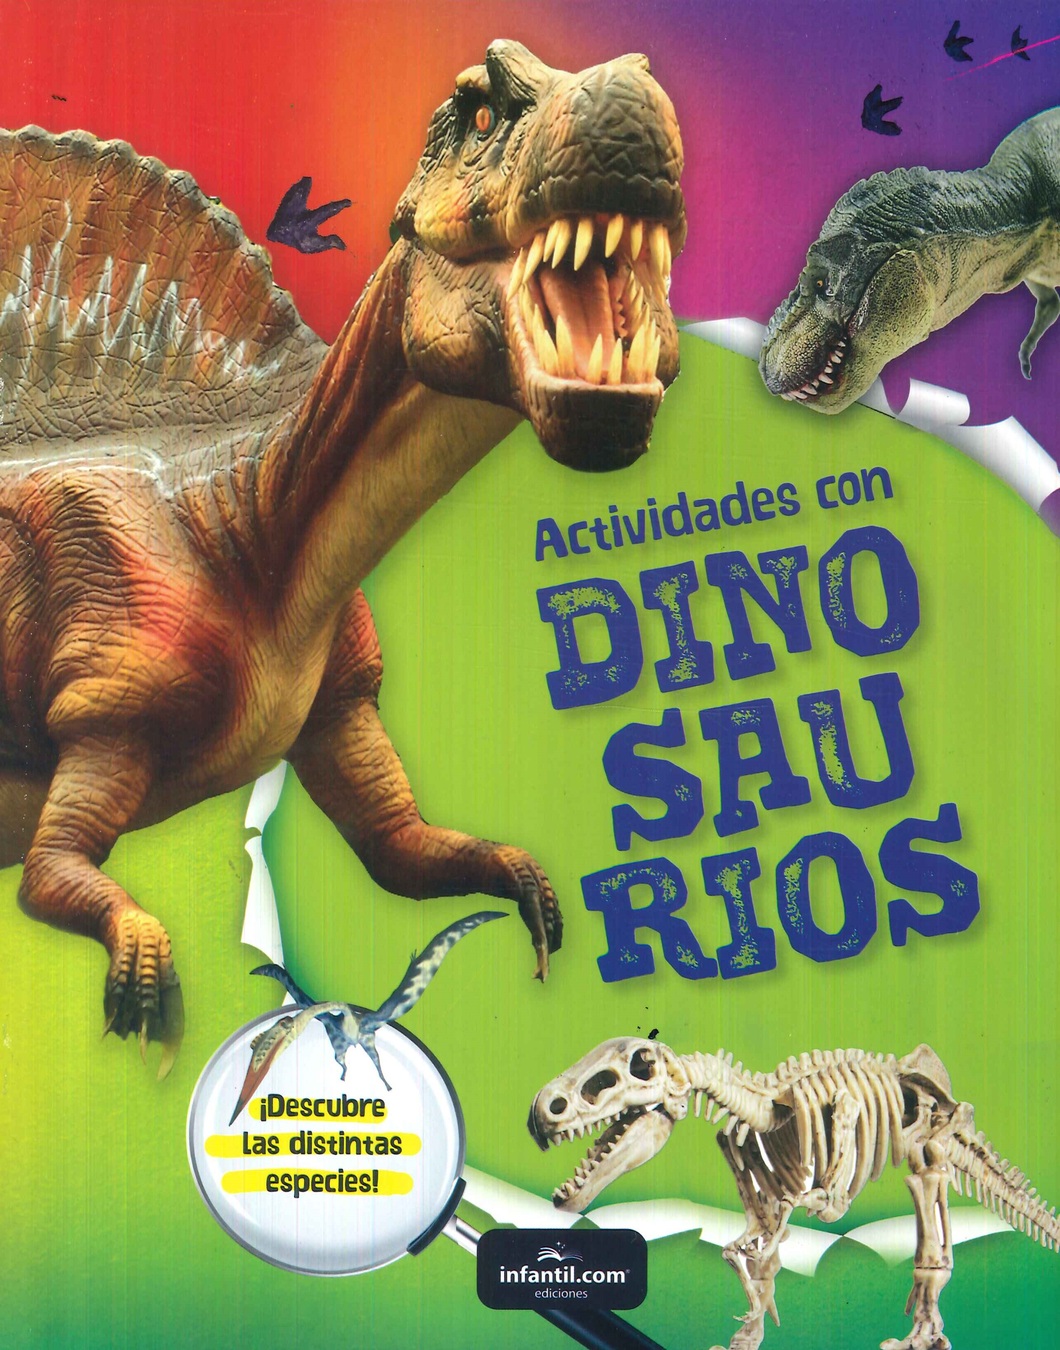 Actividades con dinosaurios.